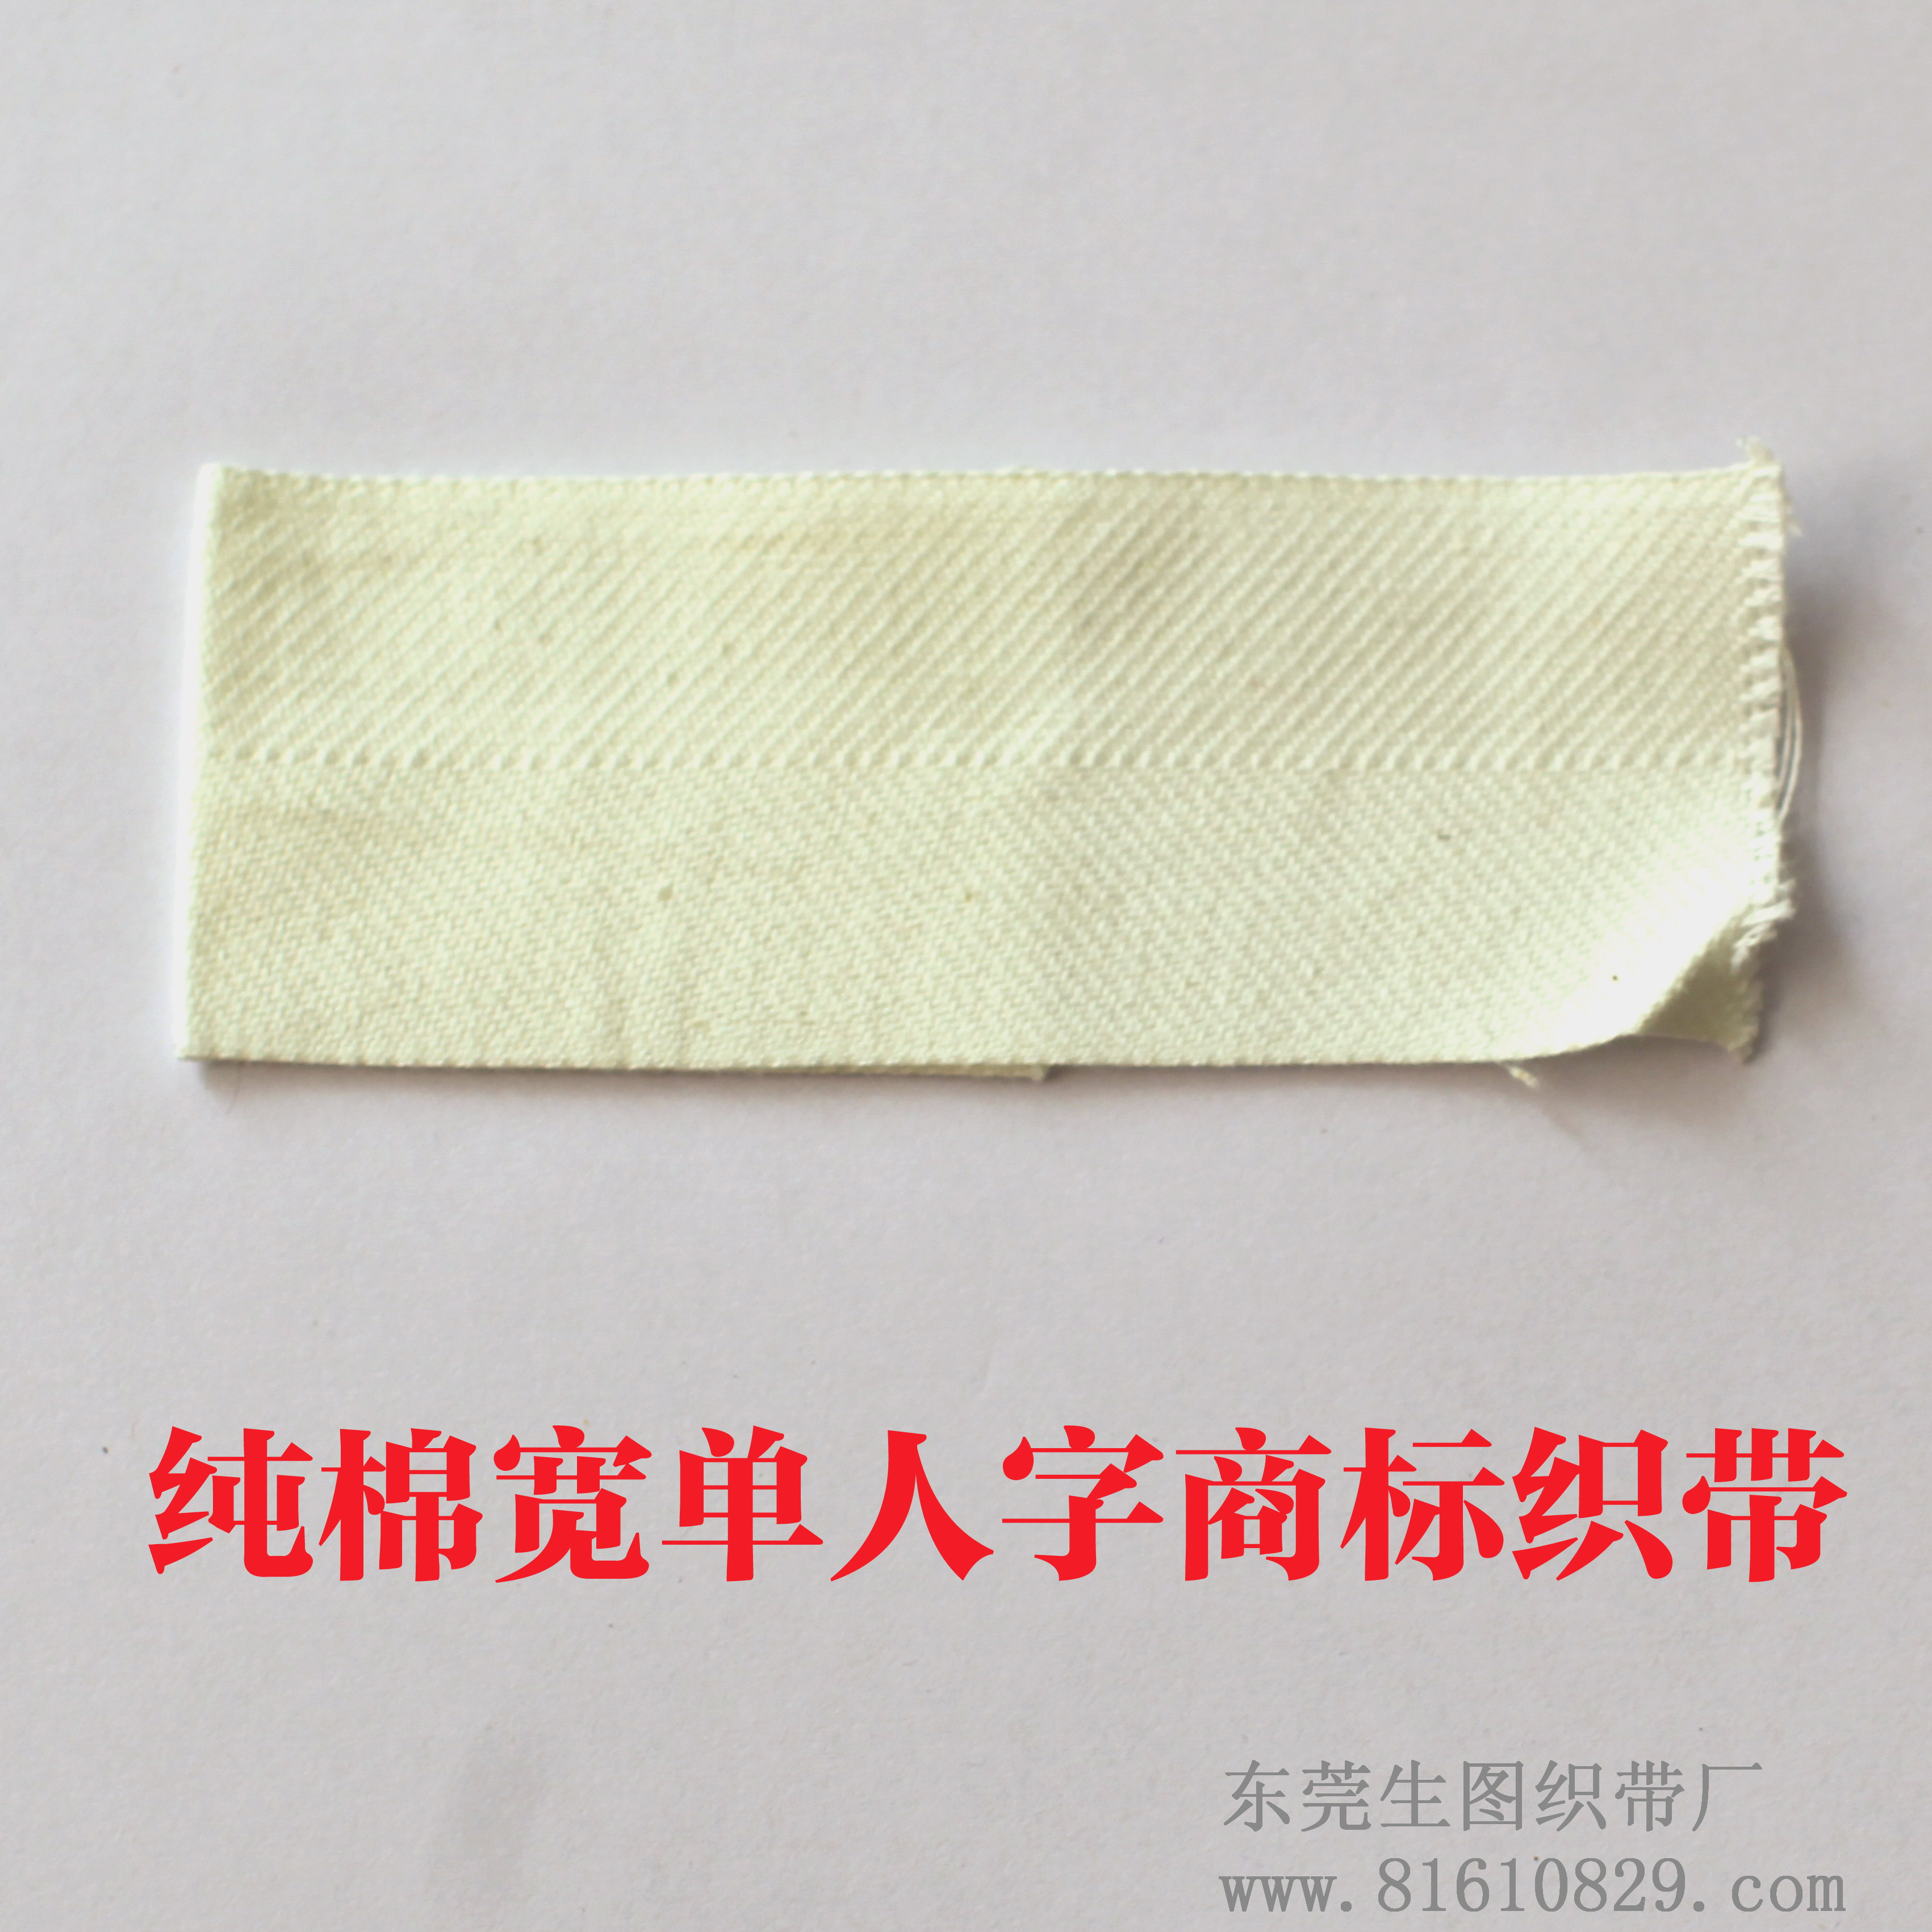 专业供应订做全棉人字纹织带 商标印刷辅料织带生产厂家